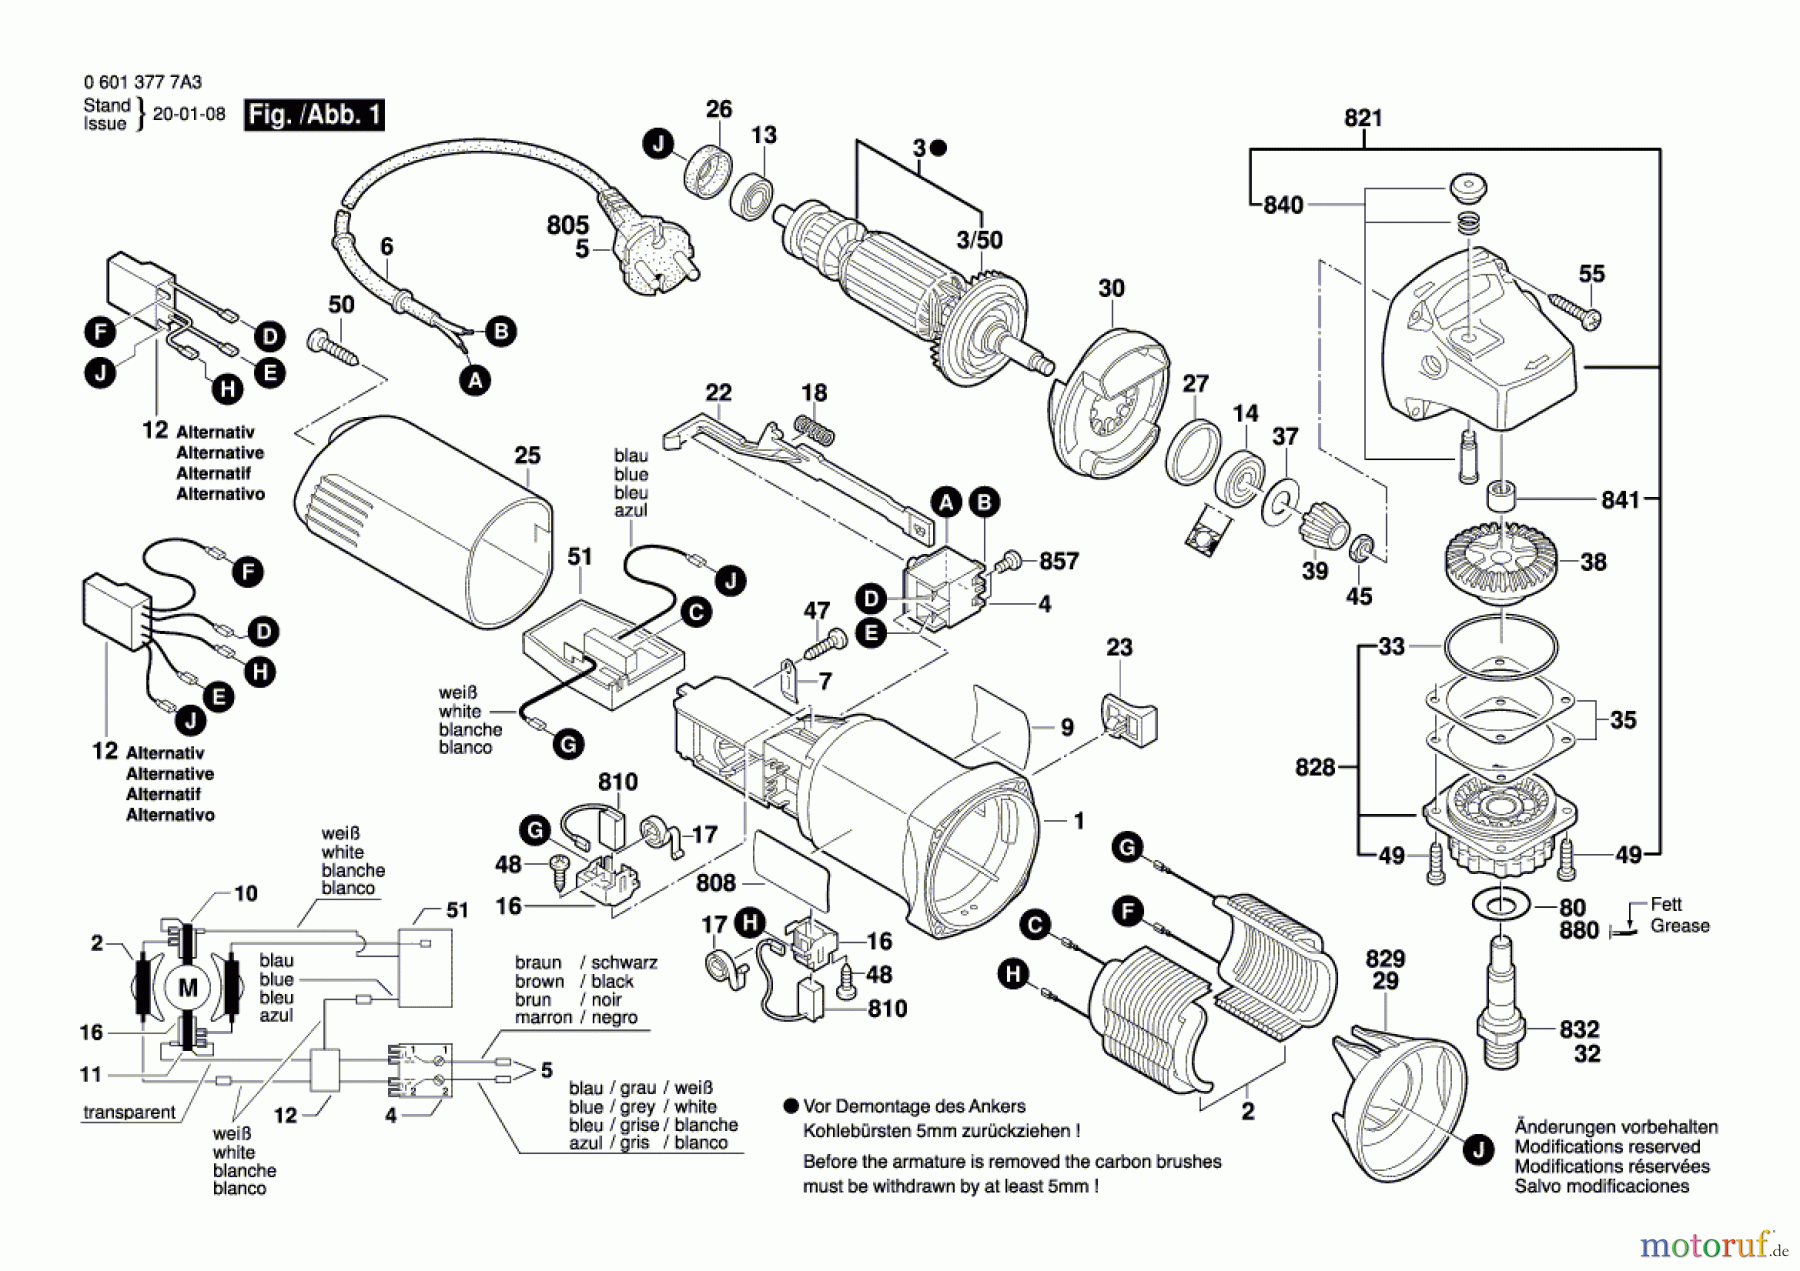  Bosch Werkzeug Winkelschleifer GWS 780 C Seite 1